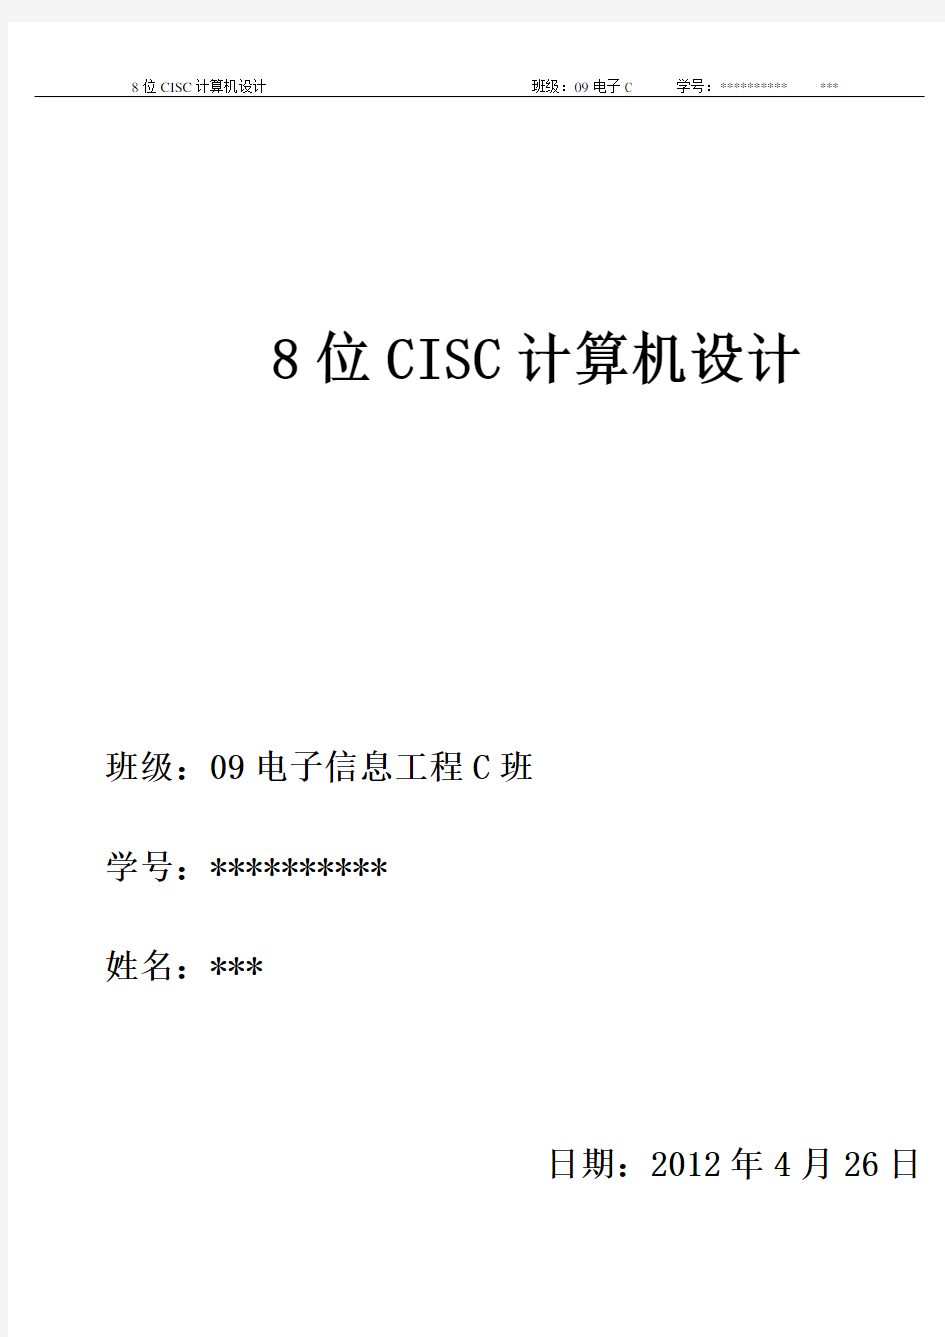 8位CISC计算机设计